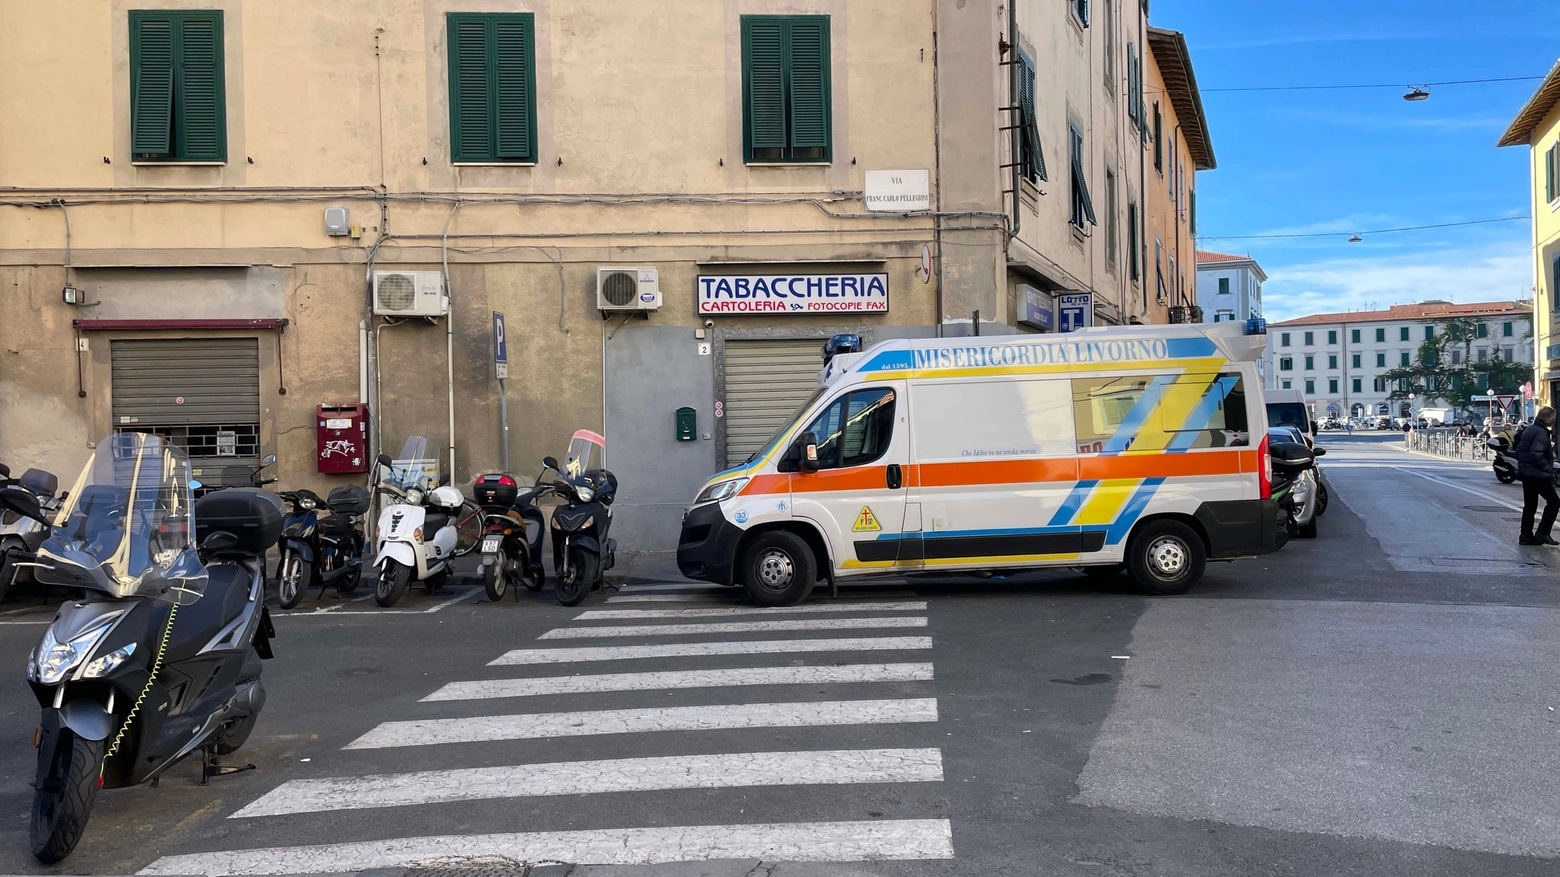 L'ambulanza arrivata in via Garibaldi (Foto Simone Lanari)